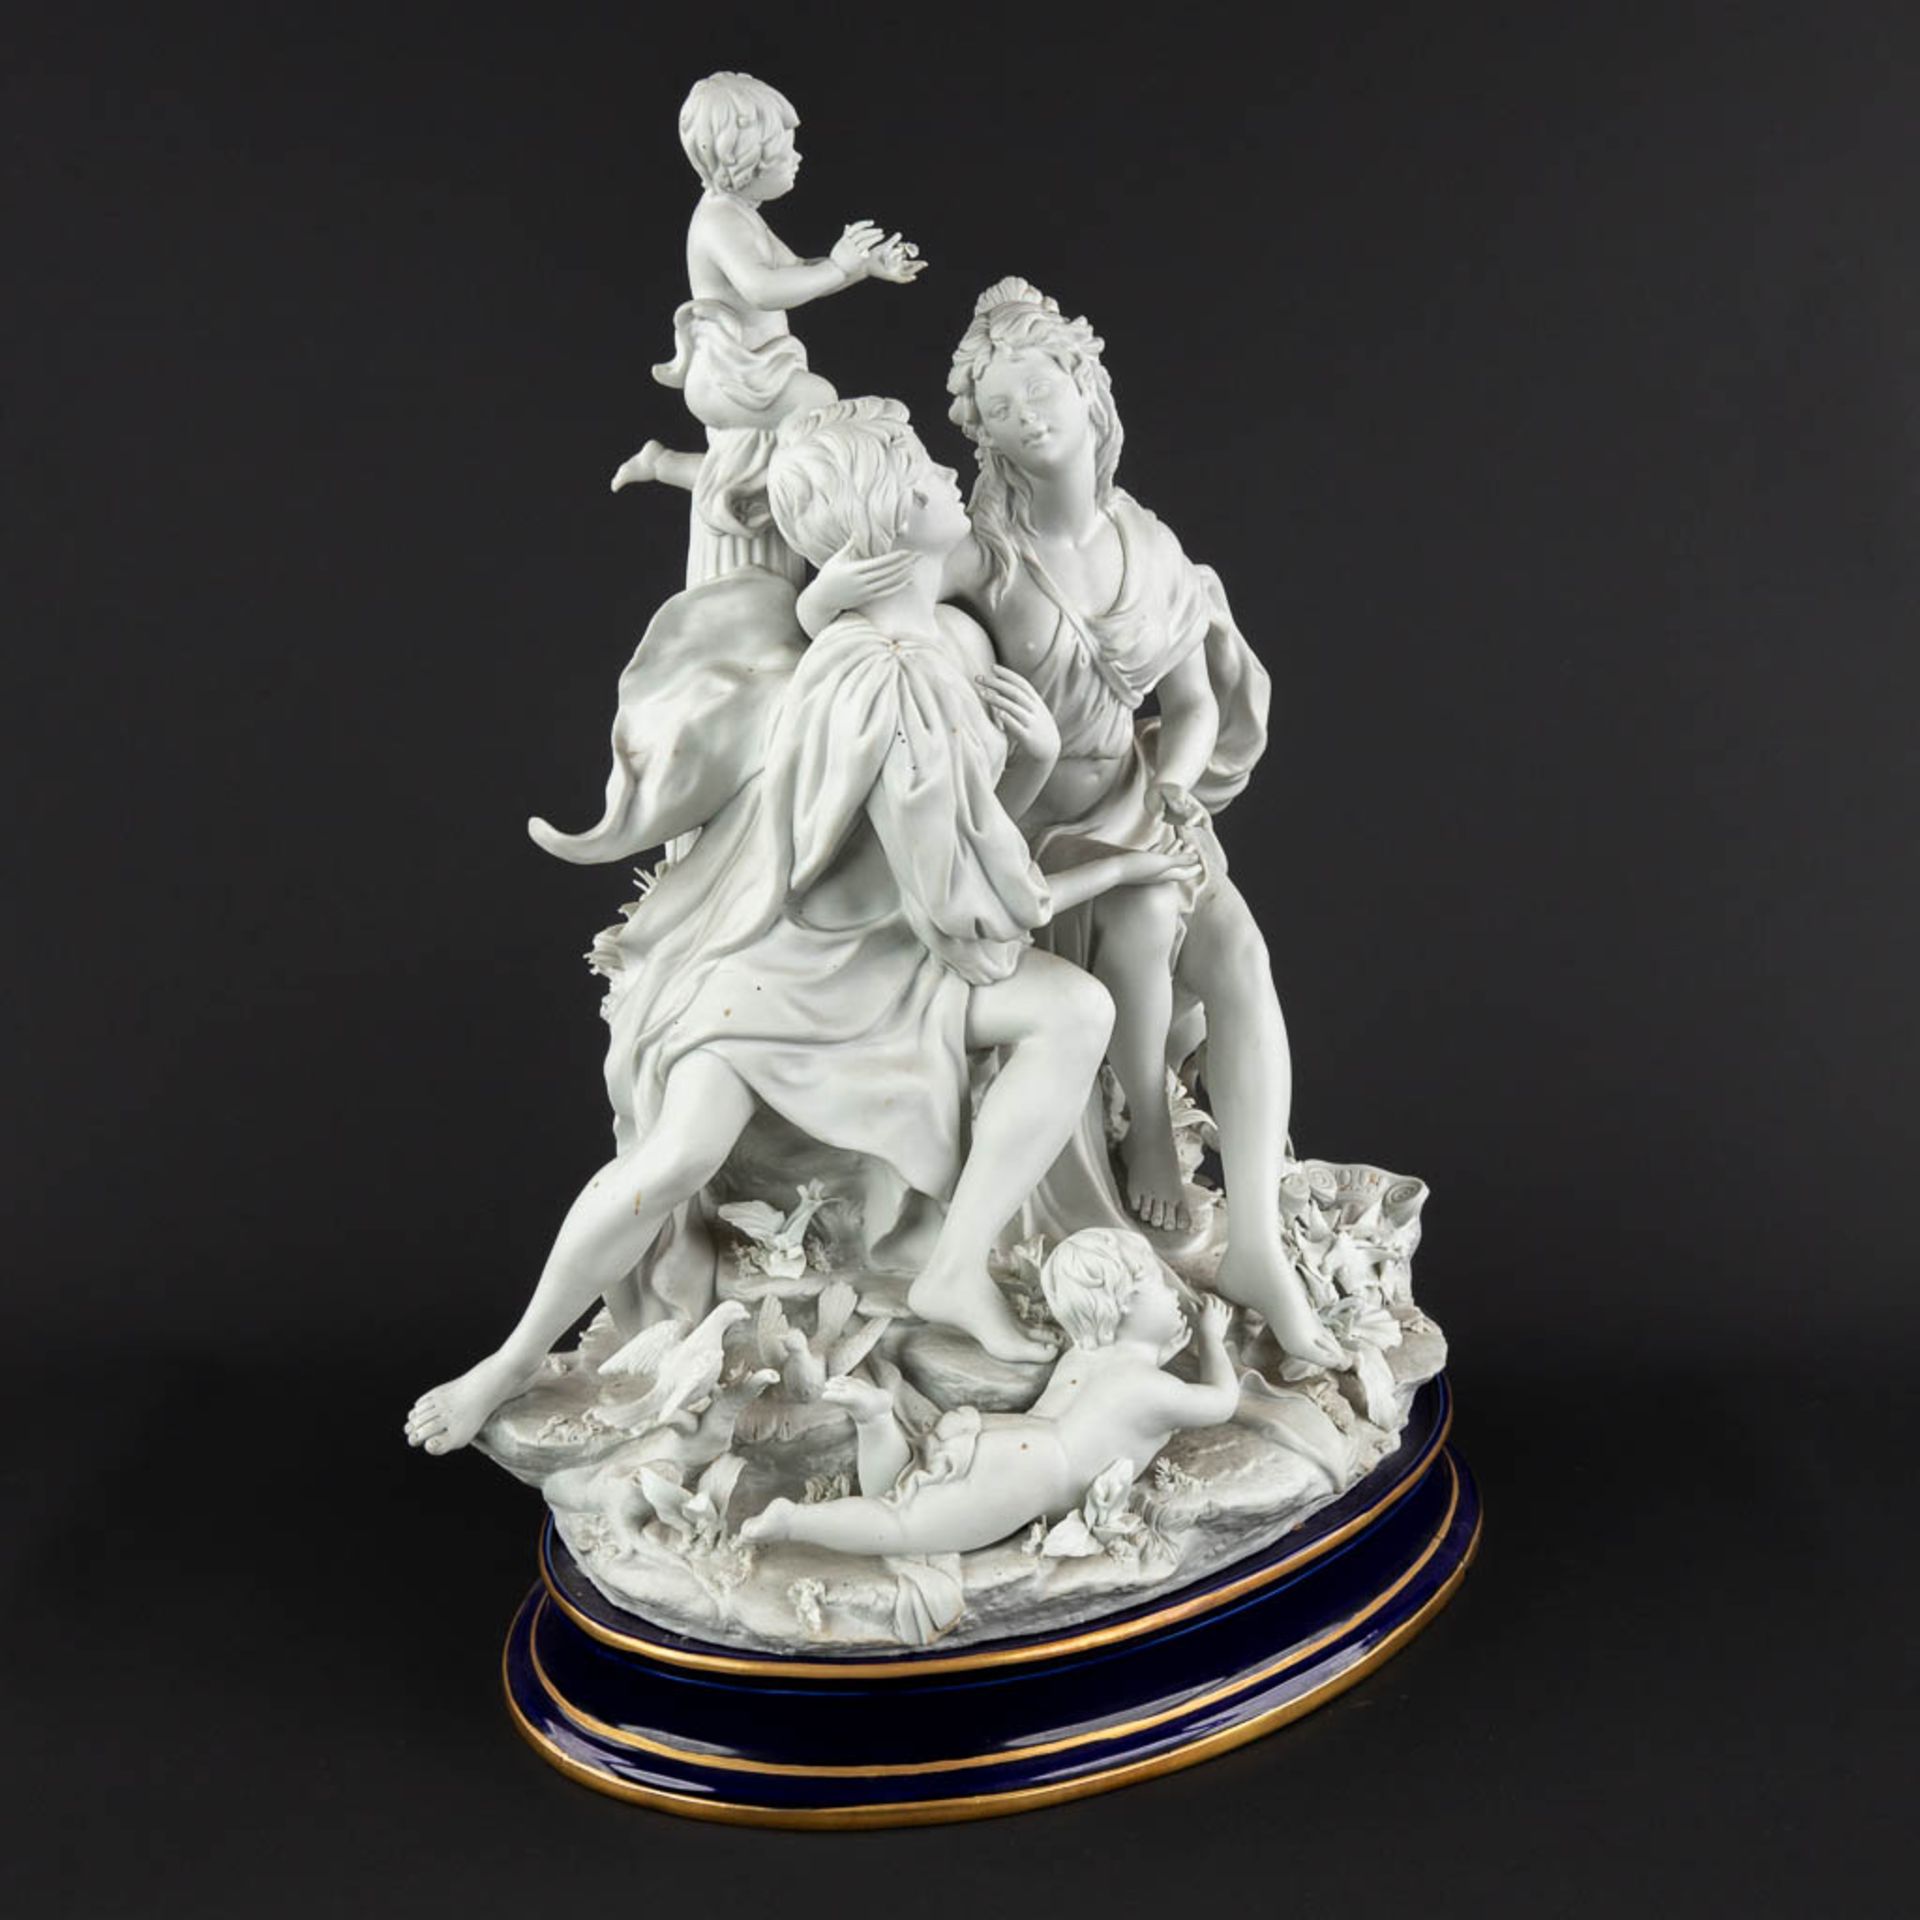 A large group, bisque porcelain with a romantic scène. 20th C. (D:26 x W:36 x H:47 cm) - Image 3 of 18